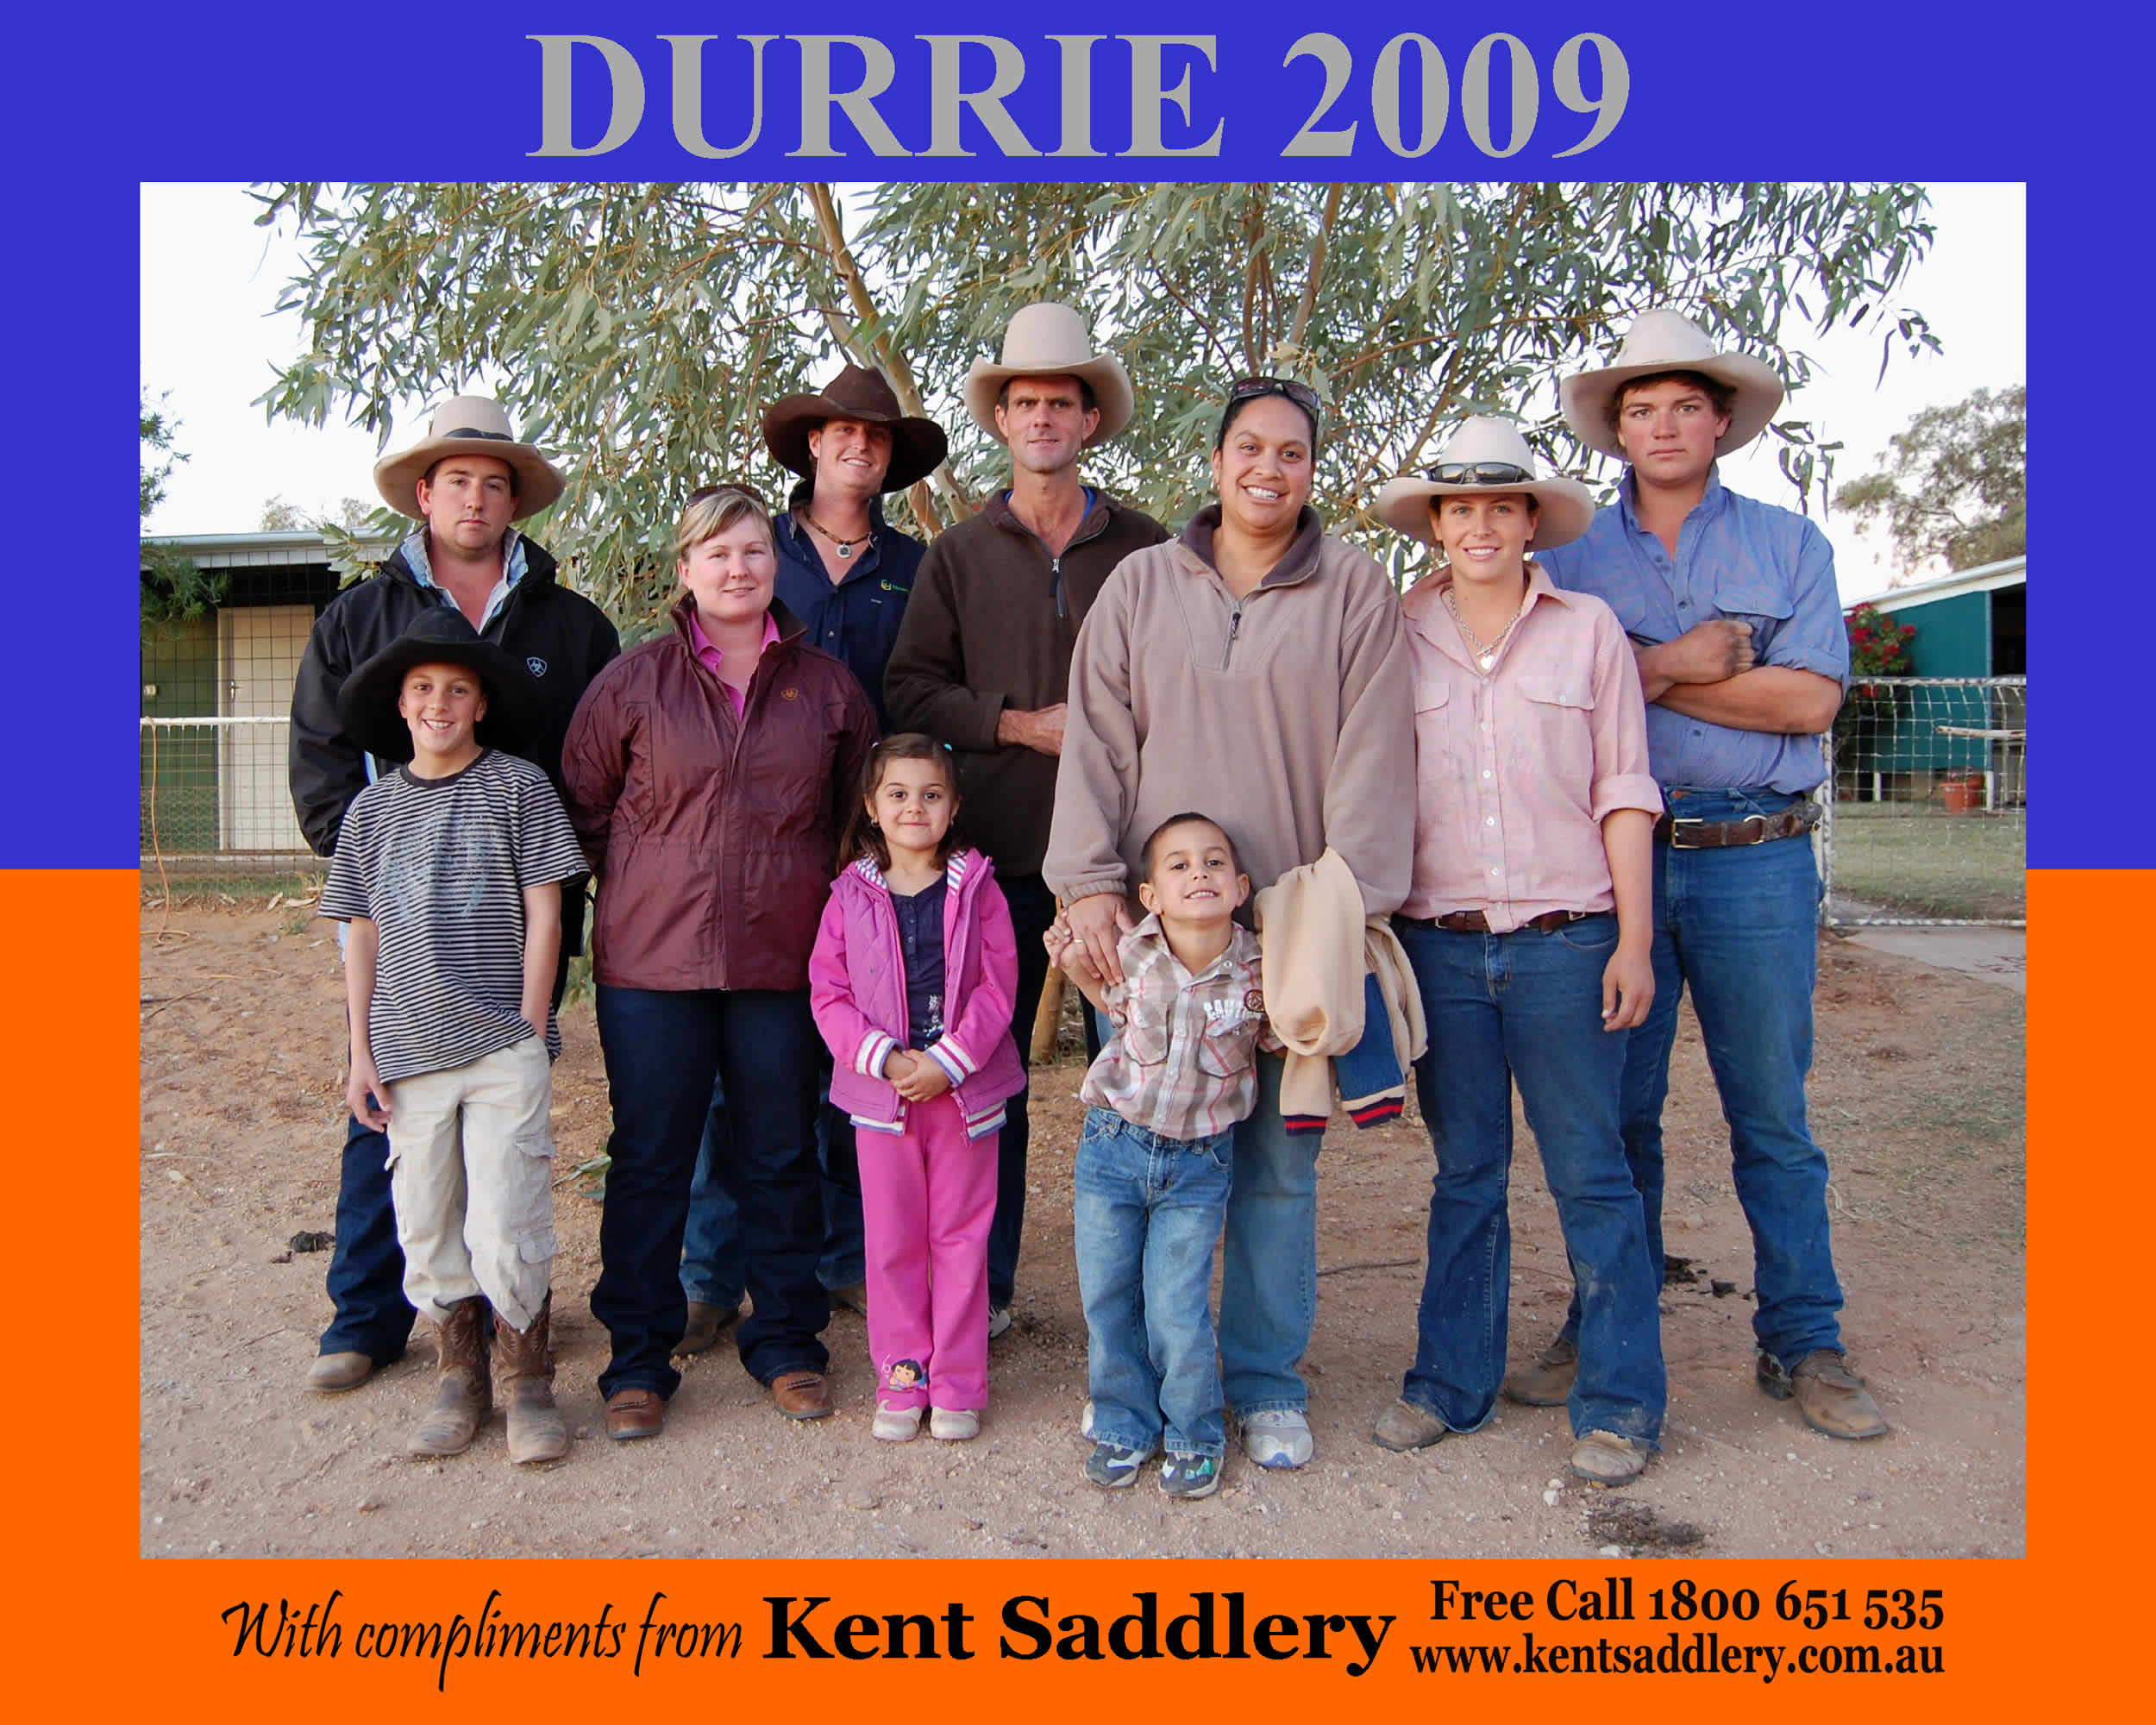 Queensland - Durrie 24